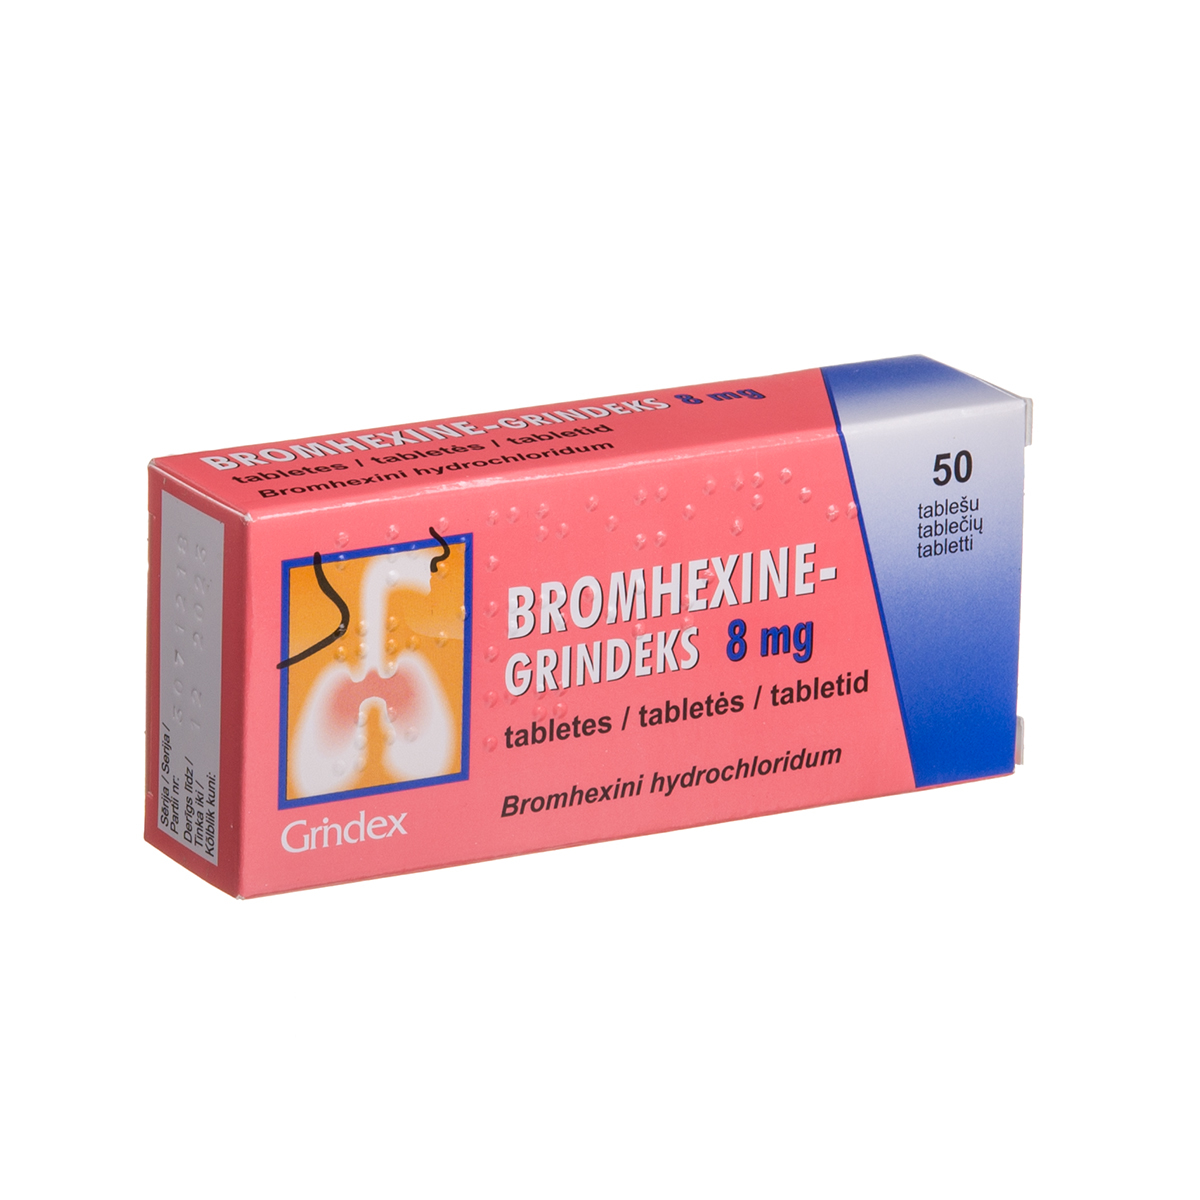 BROMHEXINE-GRINDEKS, 8 mg, tabletės, N50